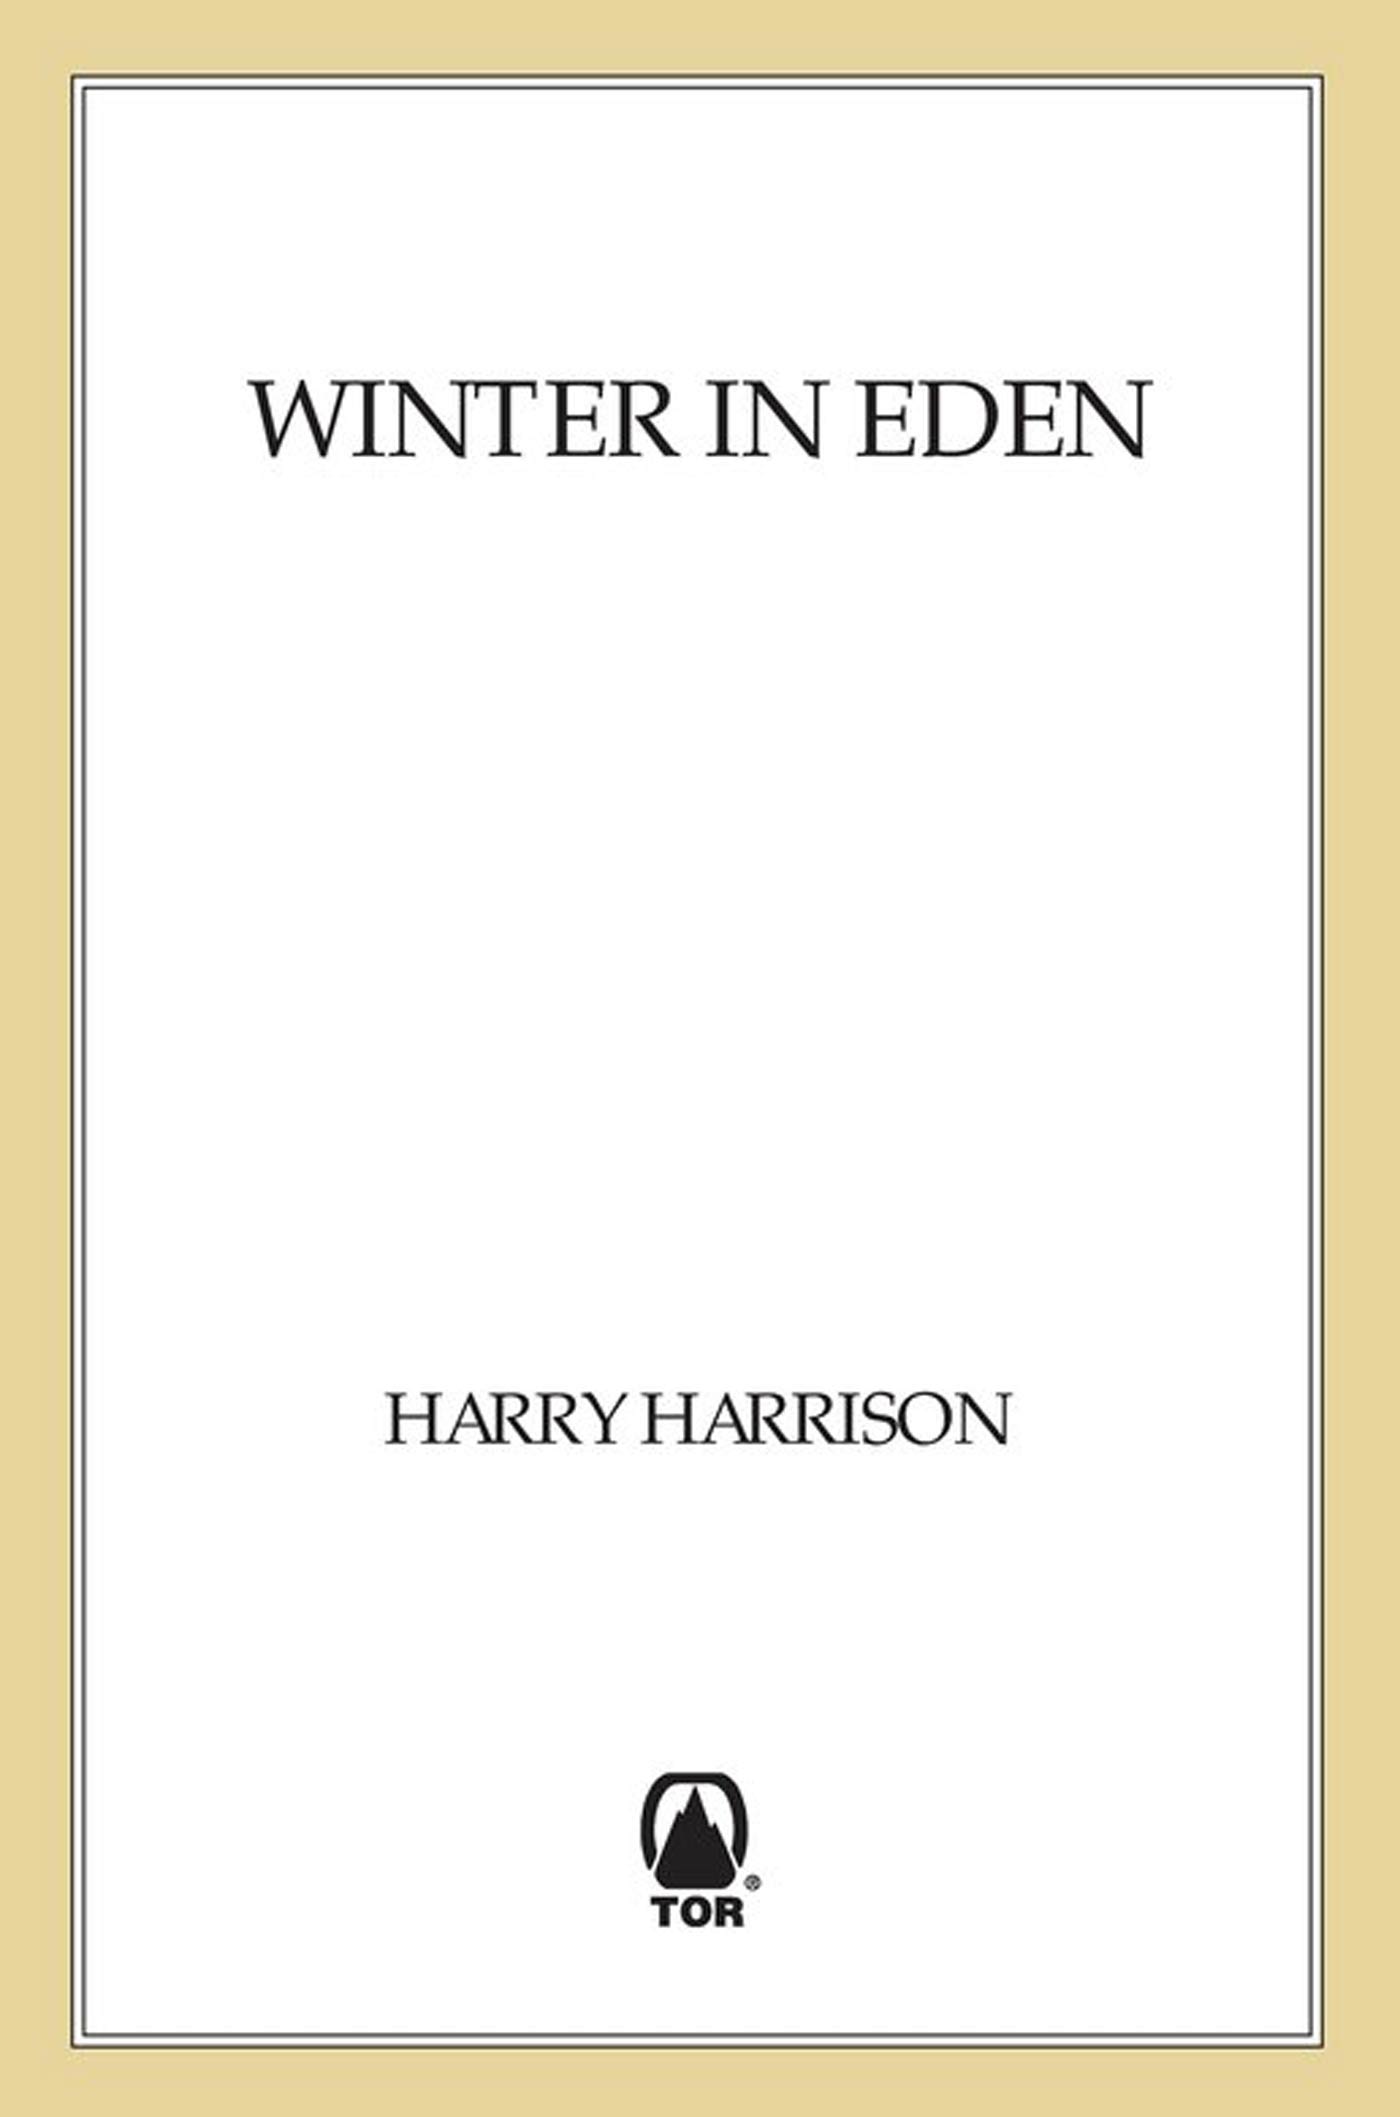 Winter in Eden by Harry Harrison